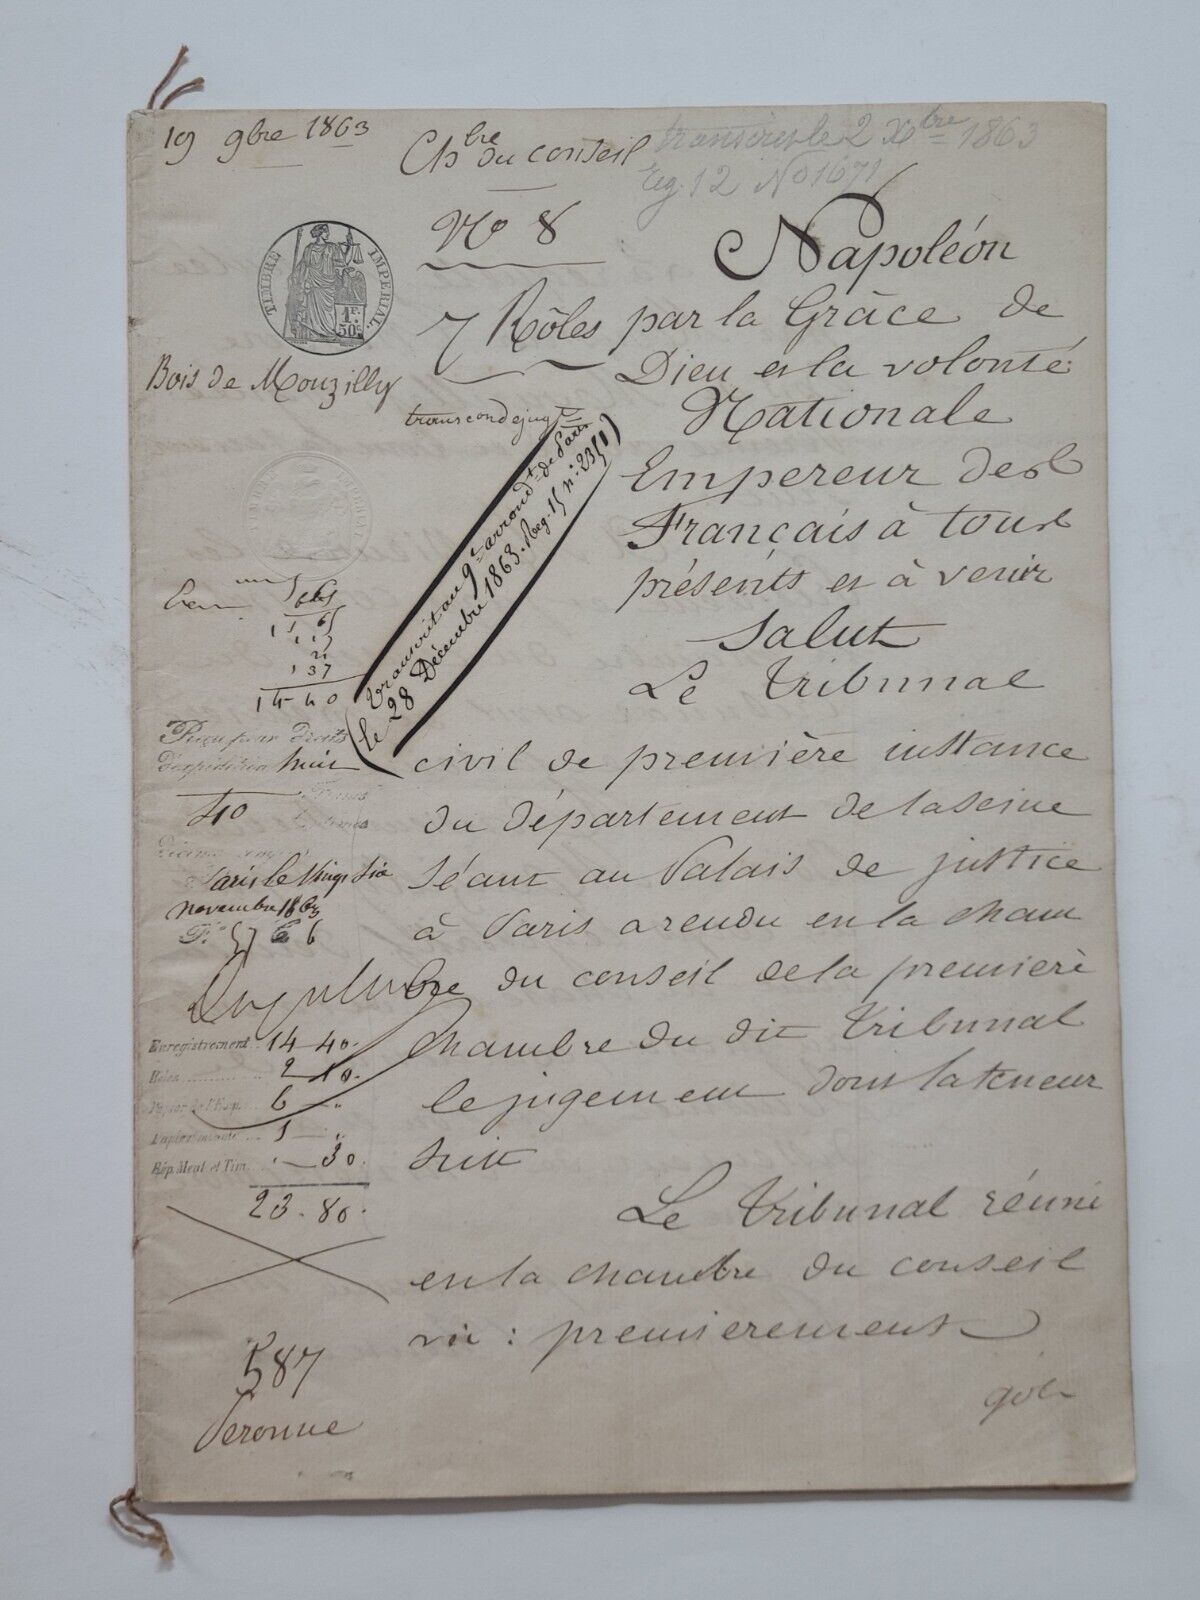 Original 1863 Napoleon Par La Grace De Dieu French Document Manuscript